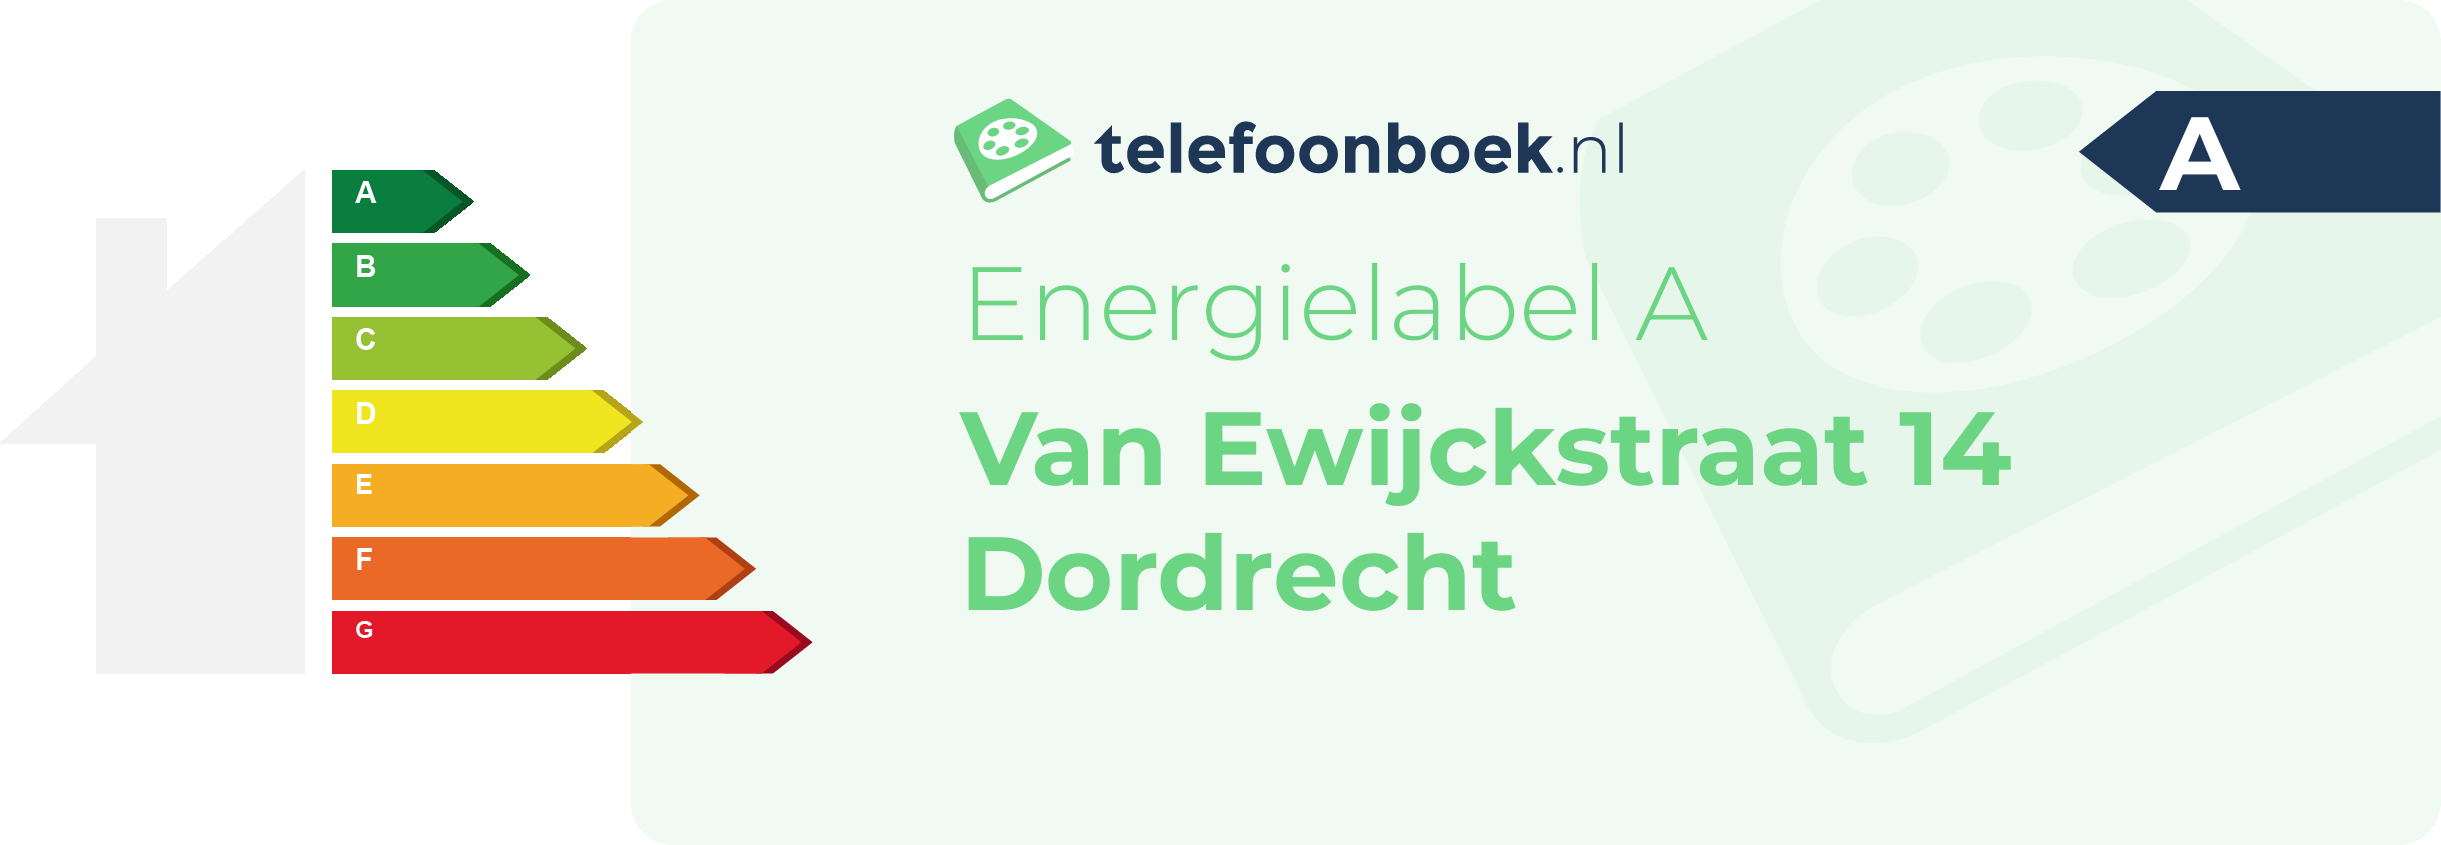 Energielabel Van Ewijckstraat 14 Dordrecht